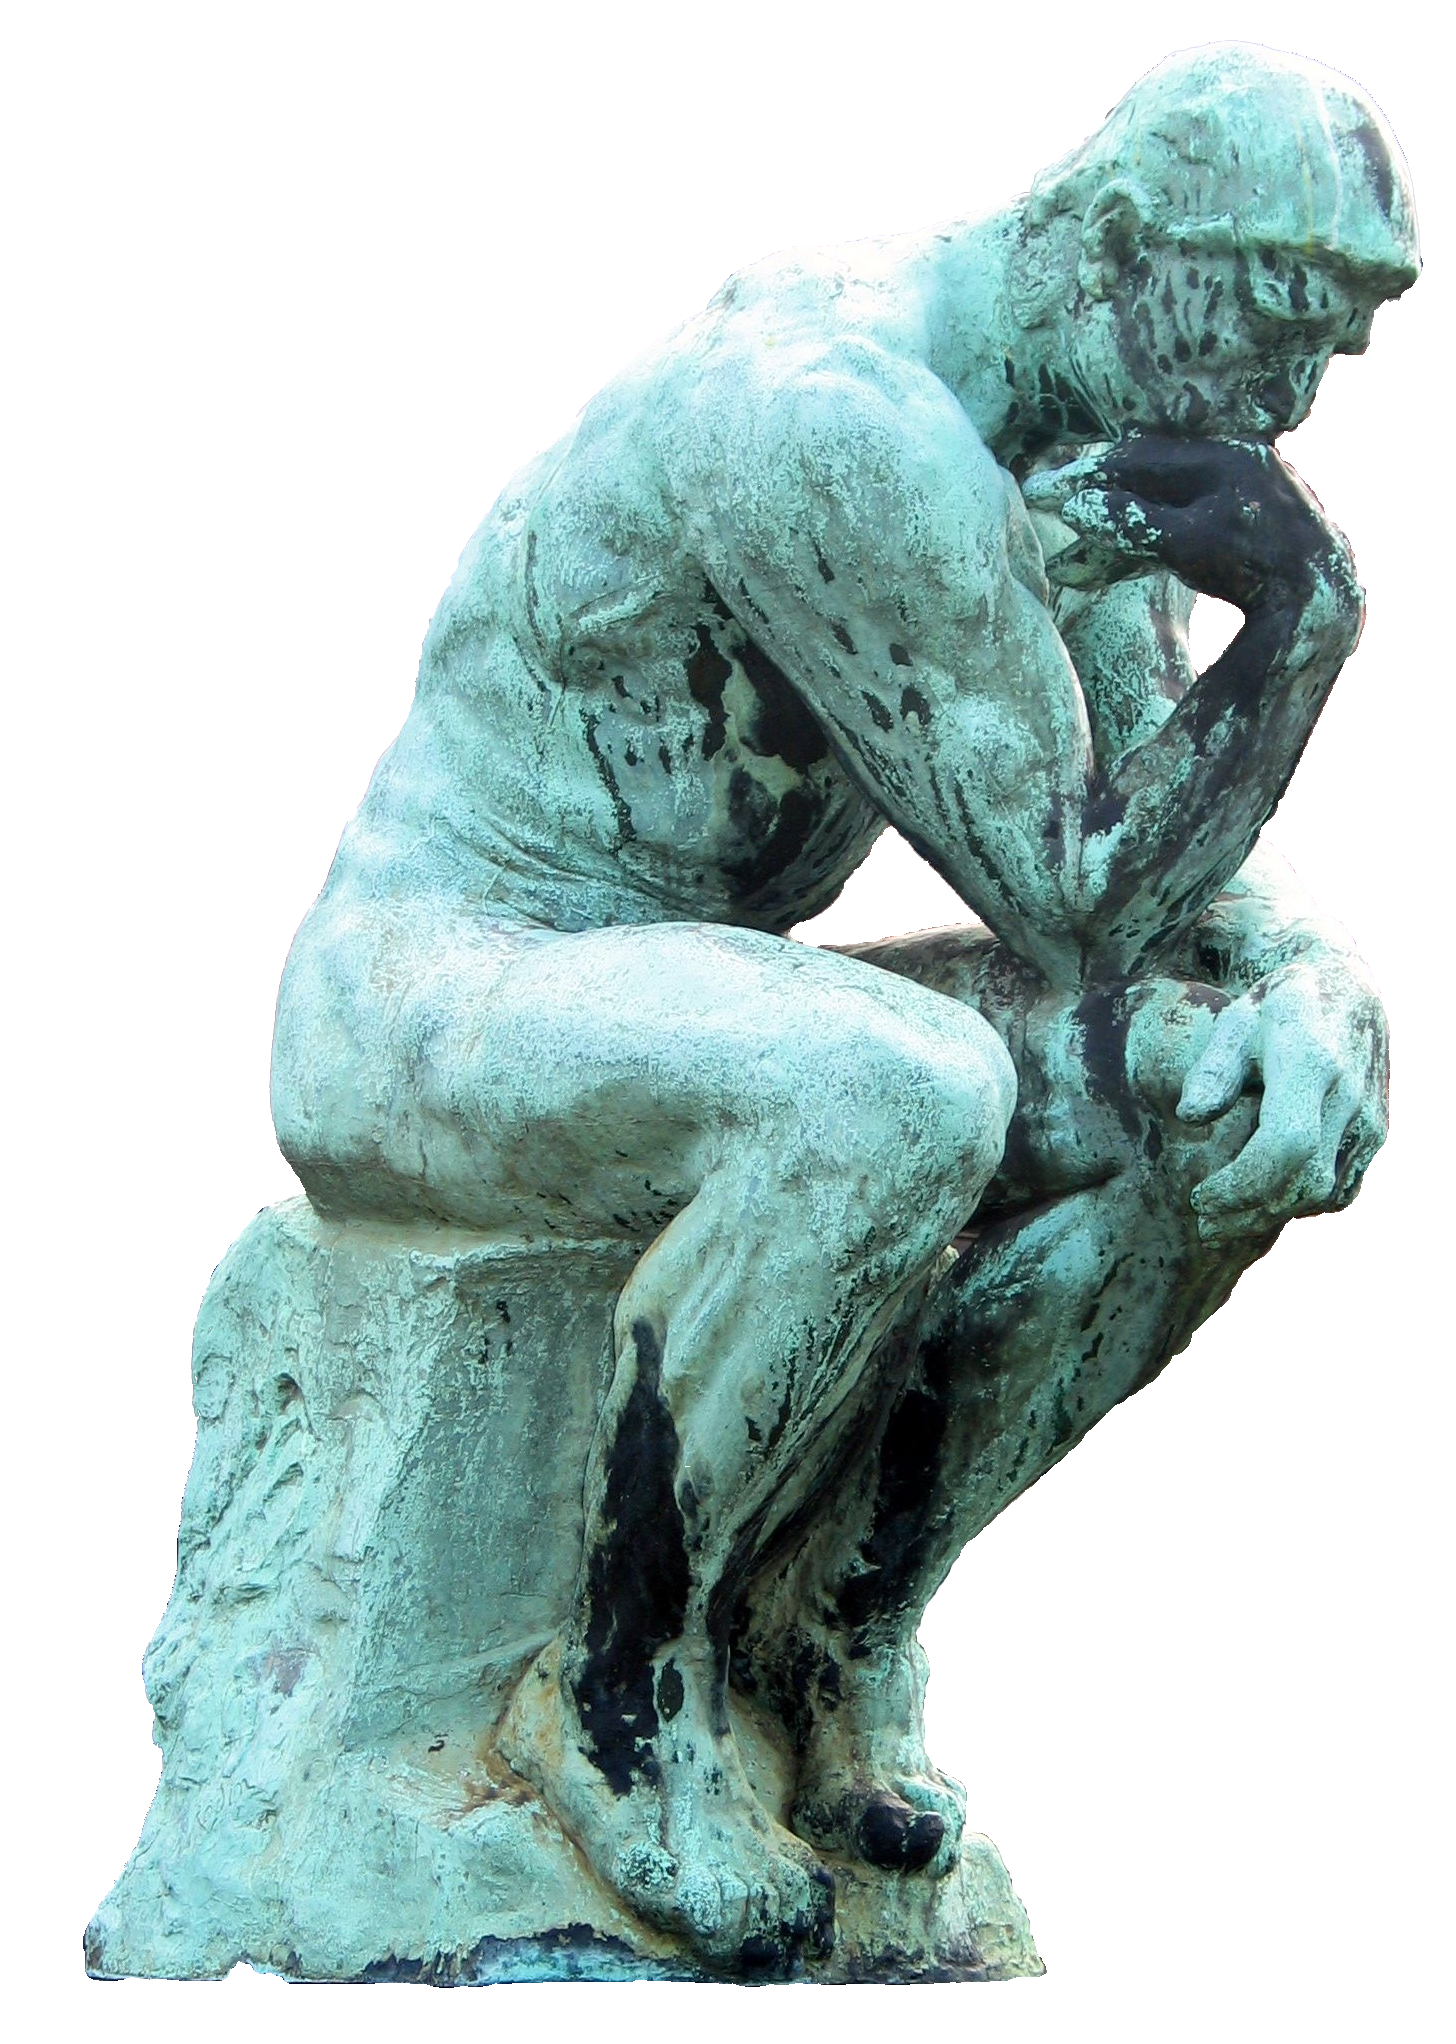 3. El pensador, de Rodin